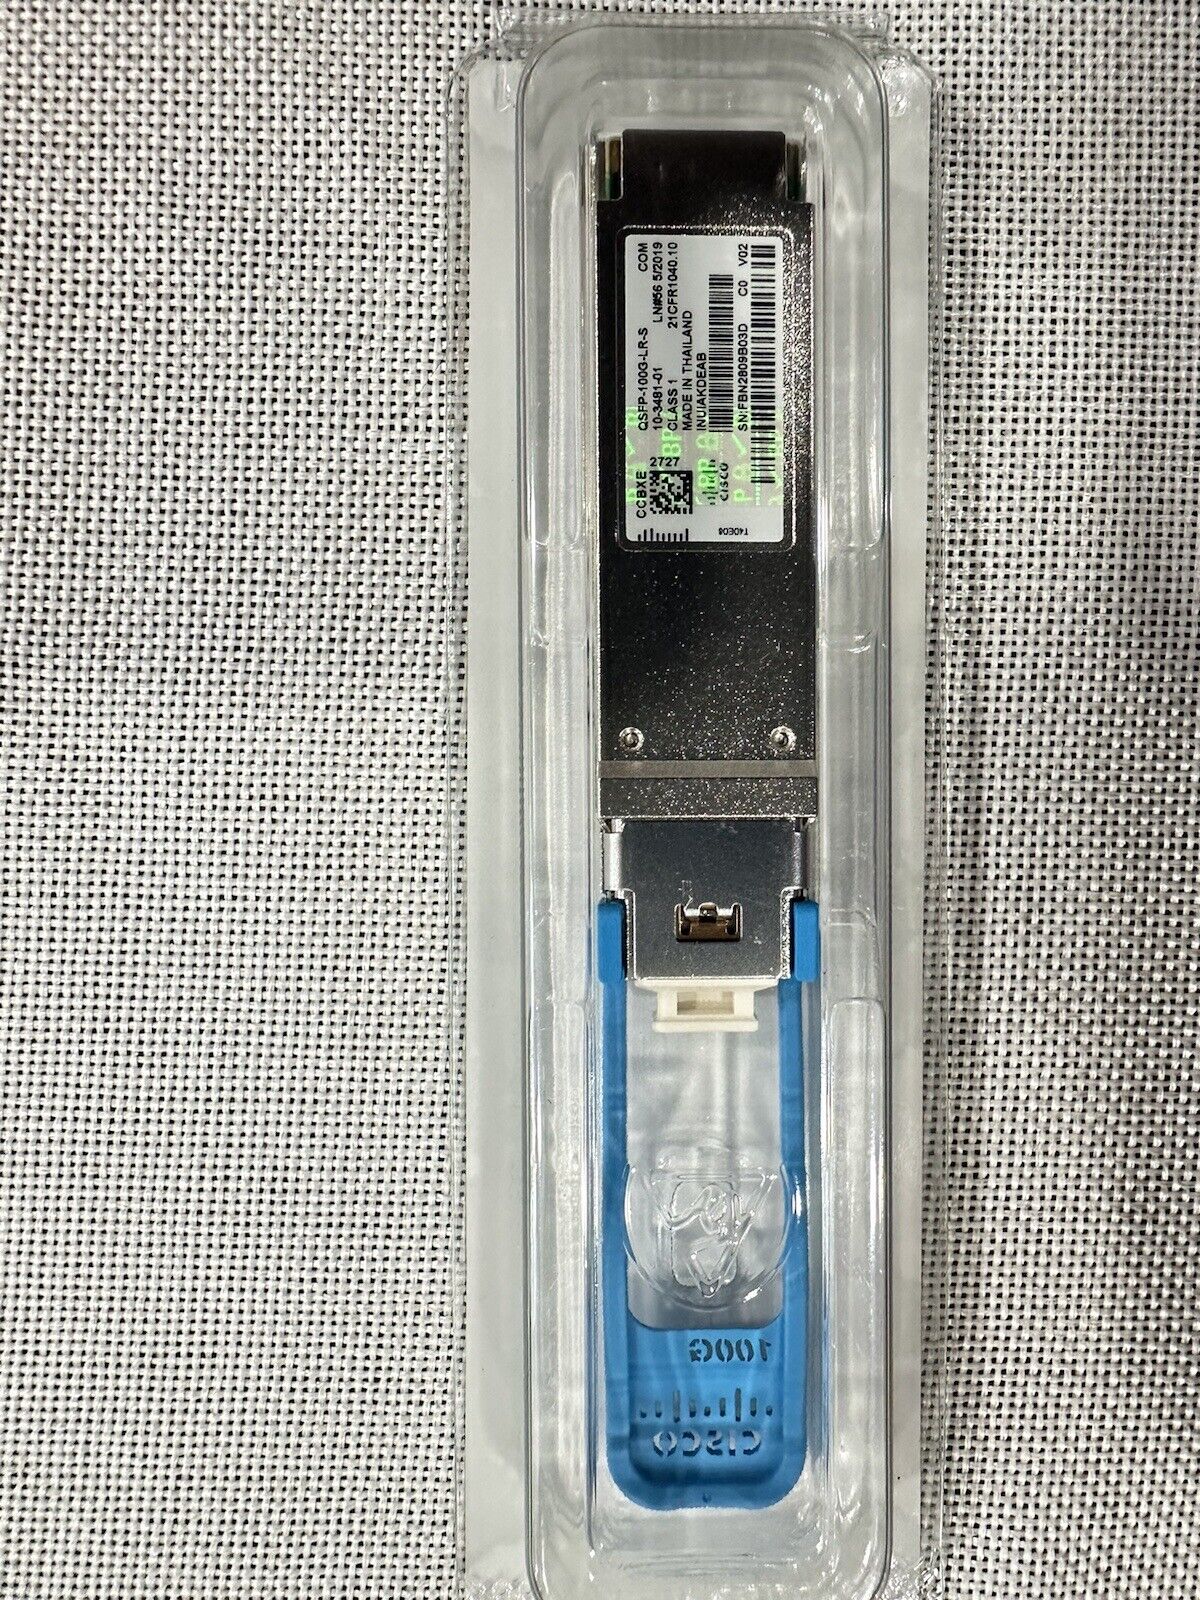 NEW  Cisco QSFP-100G-LR-S Sealed Original With hologram 10-3481-01.   INUIAKDEAB